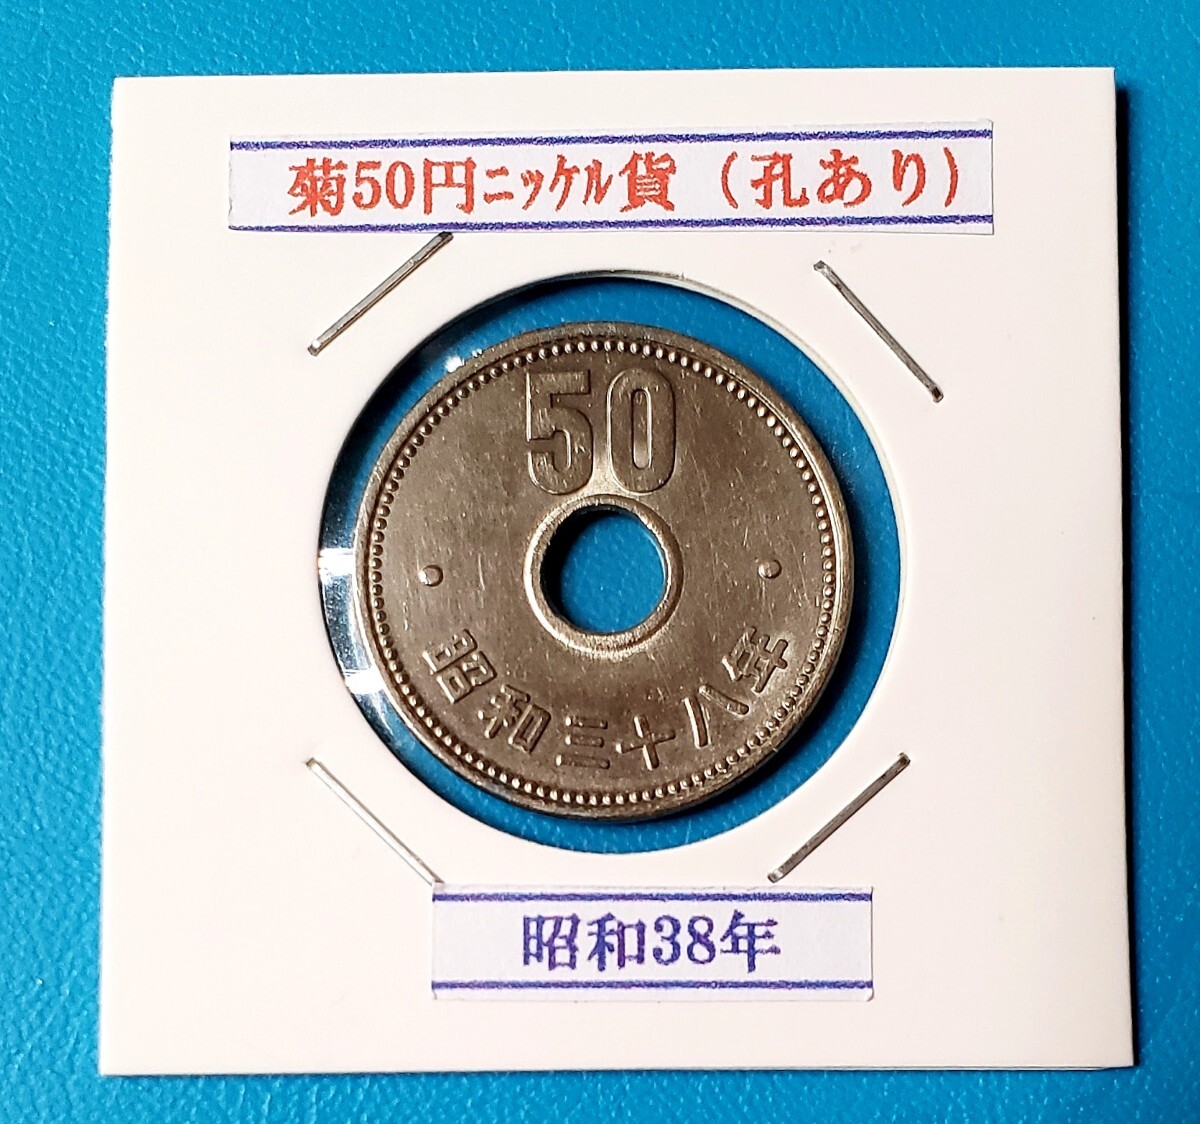 50円ニッケル貨 昭和38年         控え記号:Y02 の画像1